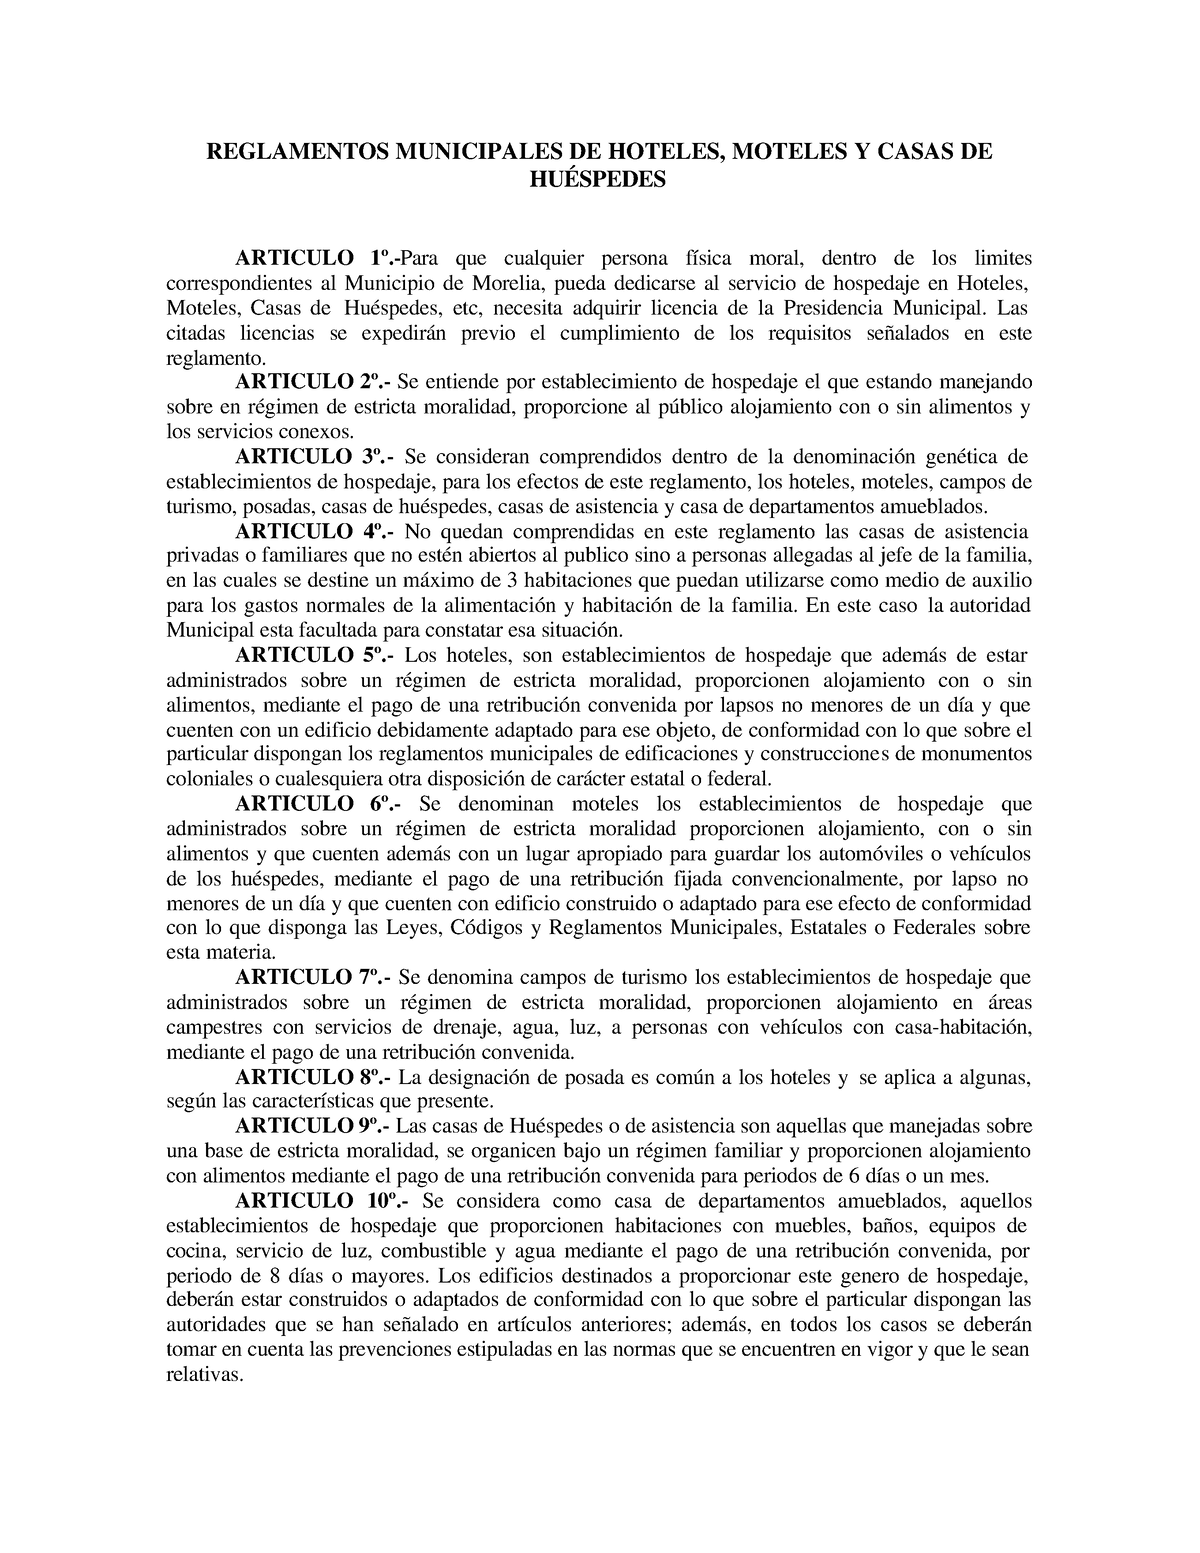 Reglamento De La Hotelería Reglamentos Municipales De Hoteles Moteles Y Casas De HuÉspedes 3840